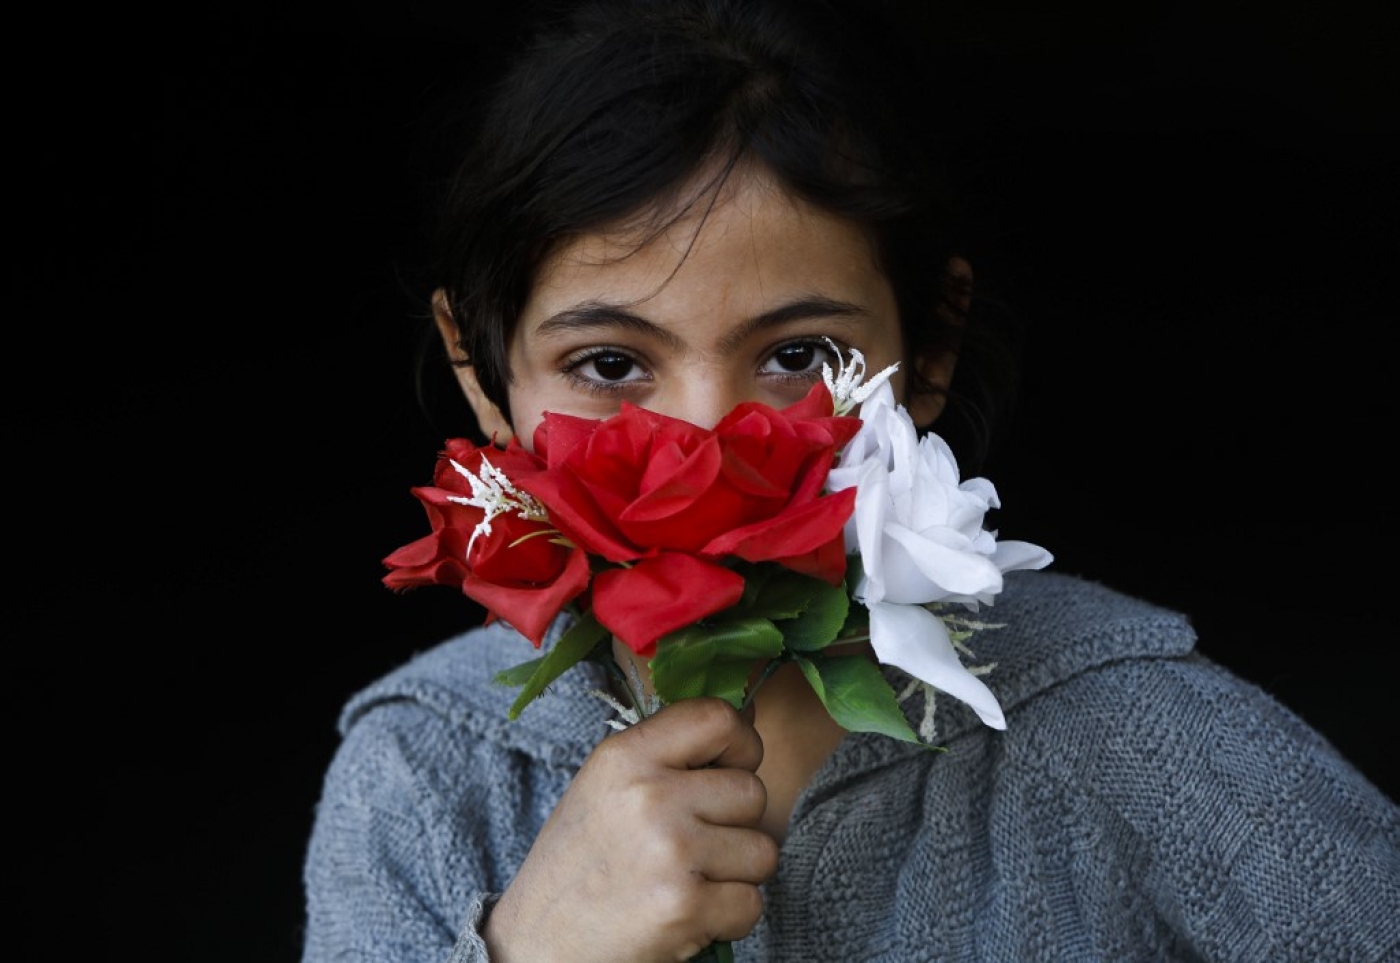 Une fillette palestinienne couvre sa bouche avec des fleurs en guise de masque, à Beit Lahia, au nord de Gaza, le 16 avril 2020 (AFP)